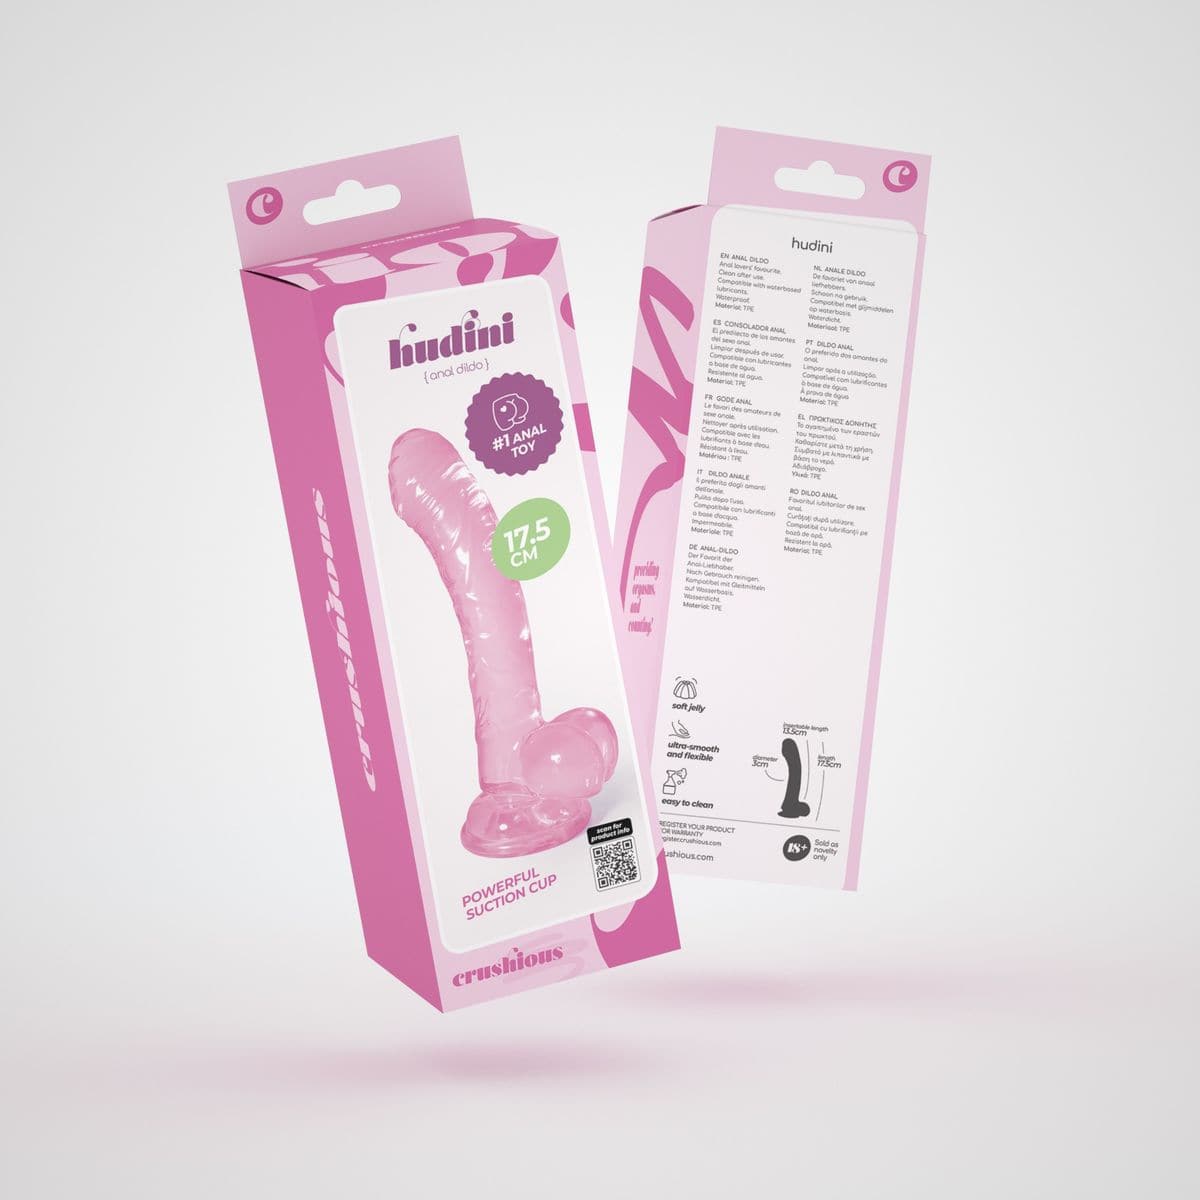 Dildo Hudini Rosa Flexível em Jelly 17,5cm Ø3,5cm - Prazer Realista e Fixação Segura - Pérola SexShop